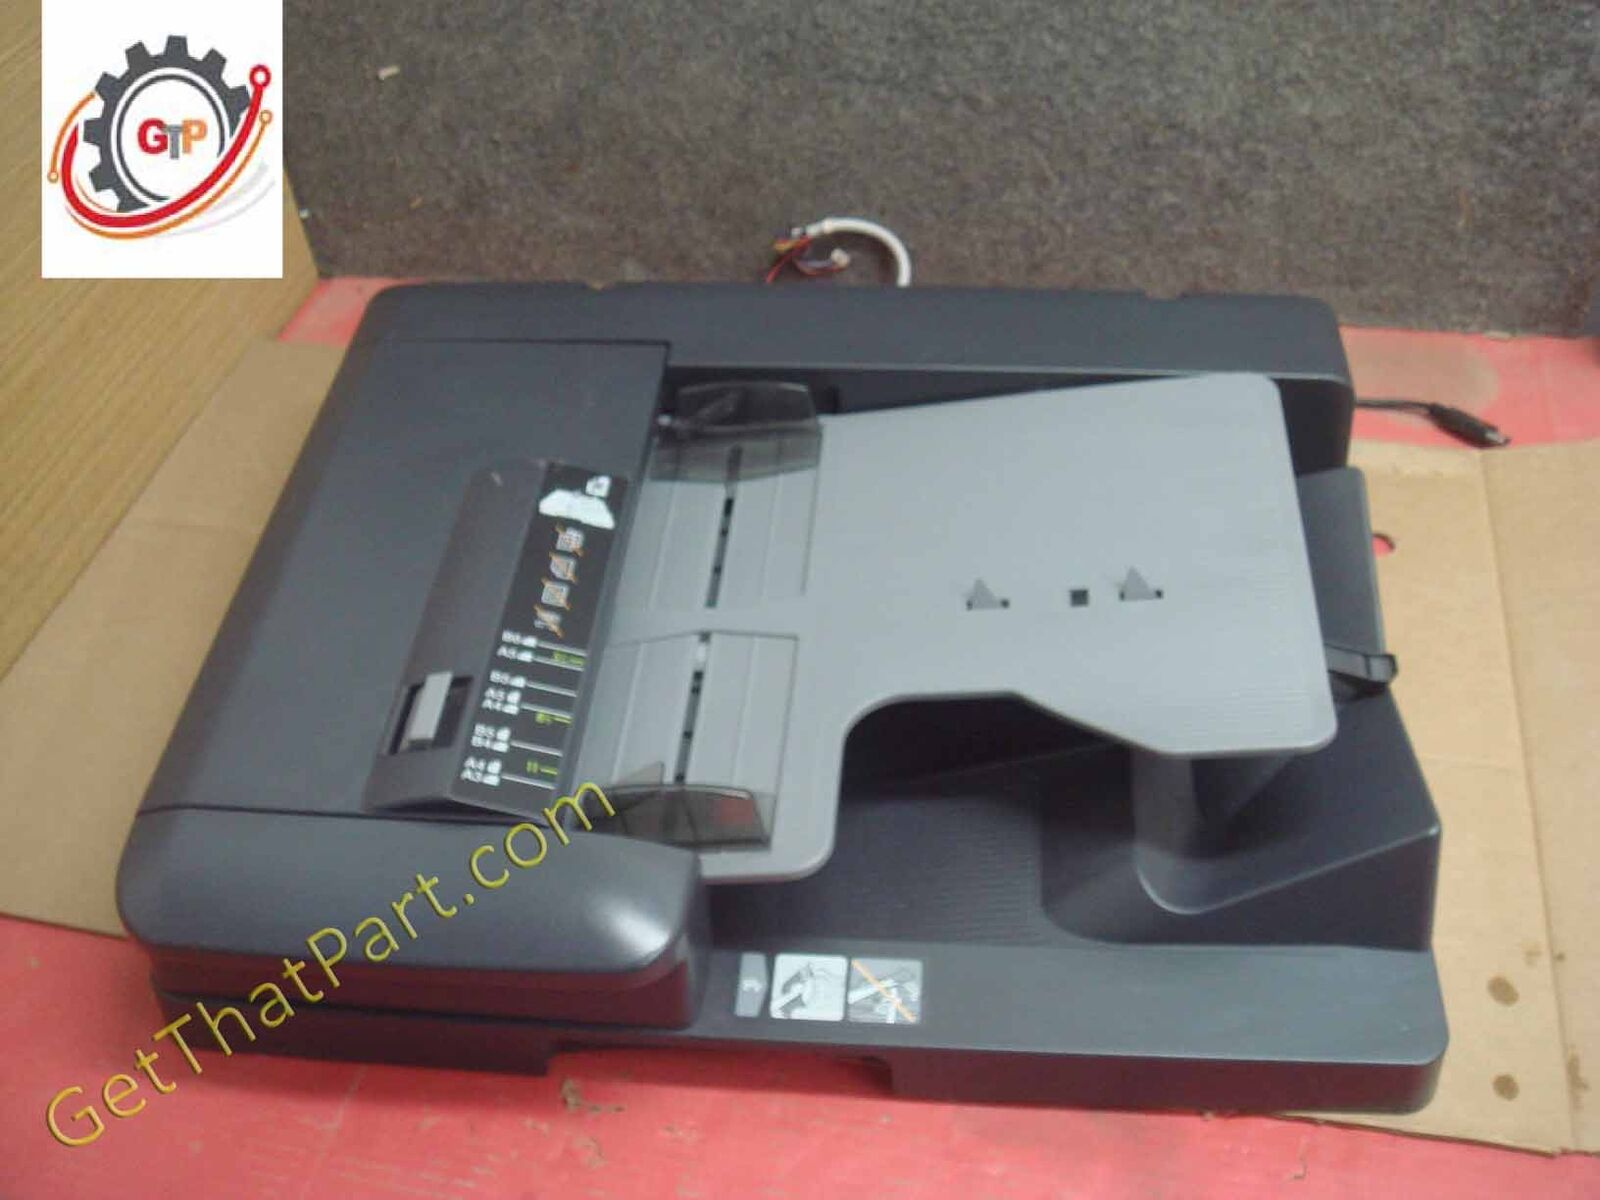 Alimentador automático de documentos de doble escaneo Konica Minolta Bizhub 554e DF-701 ( restaurado )